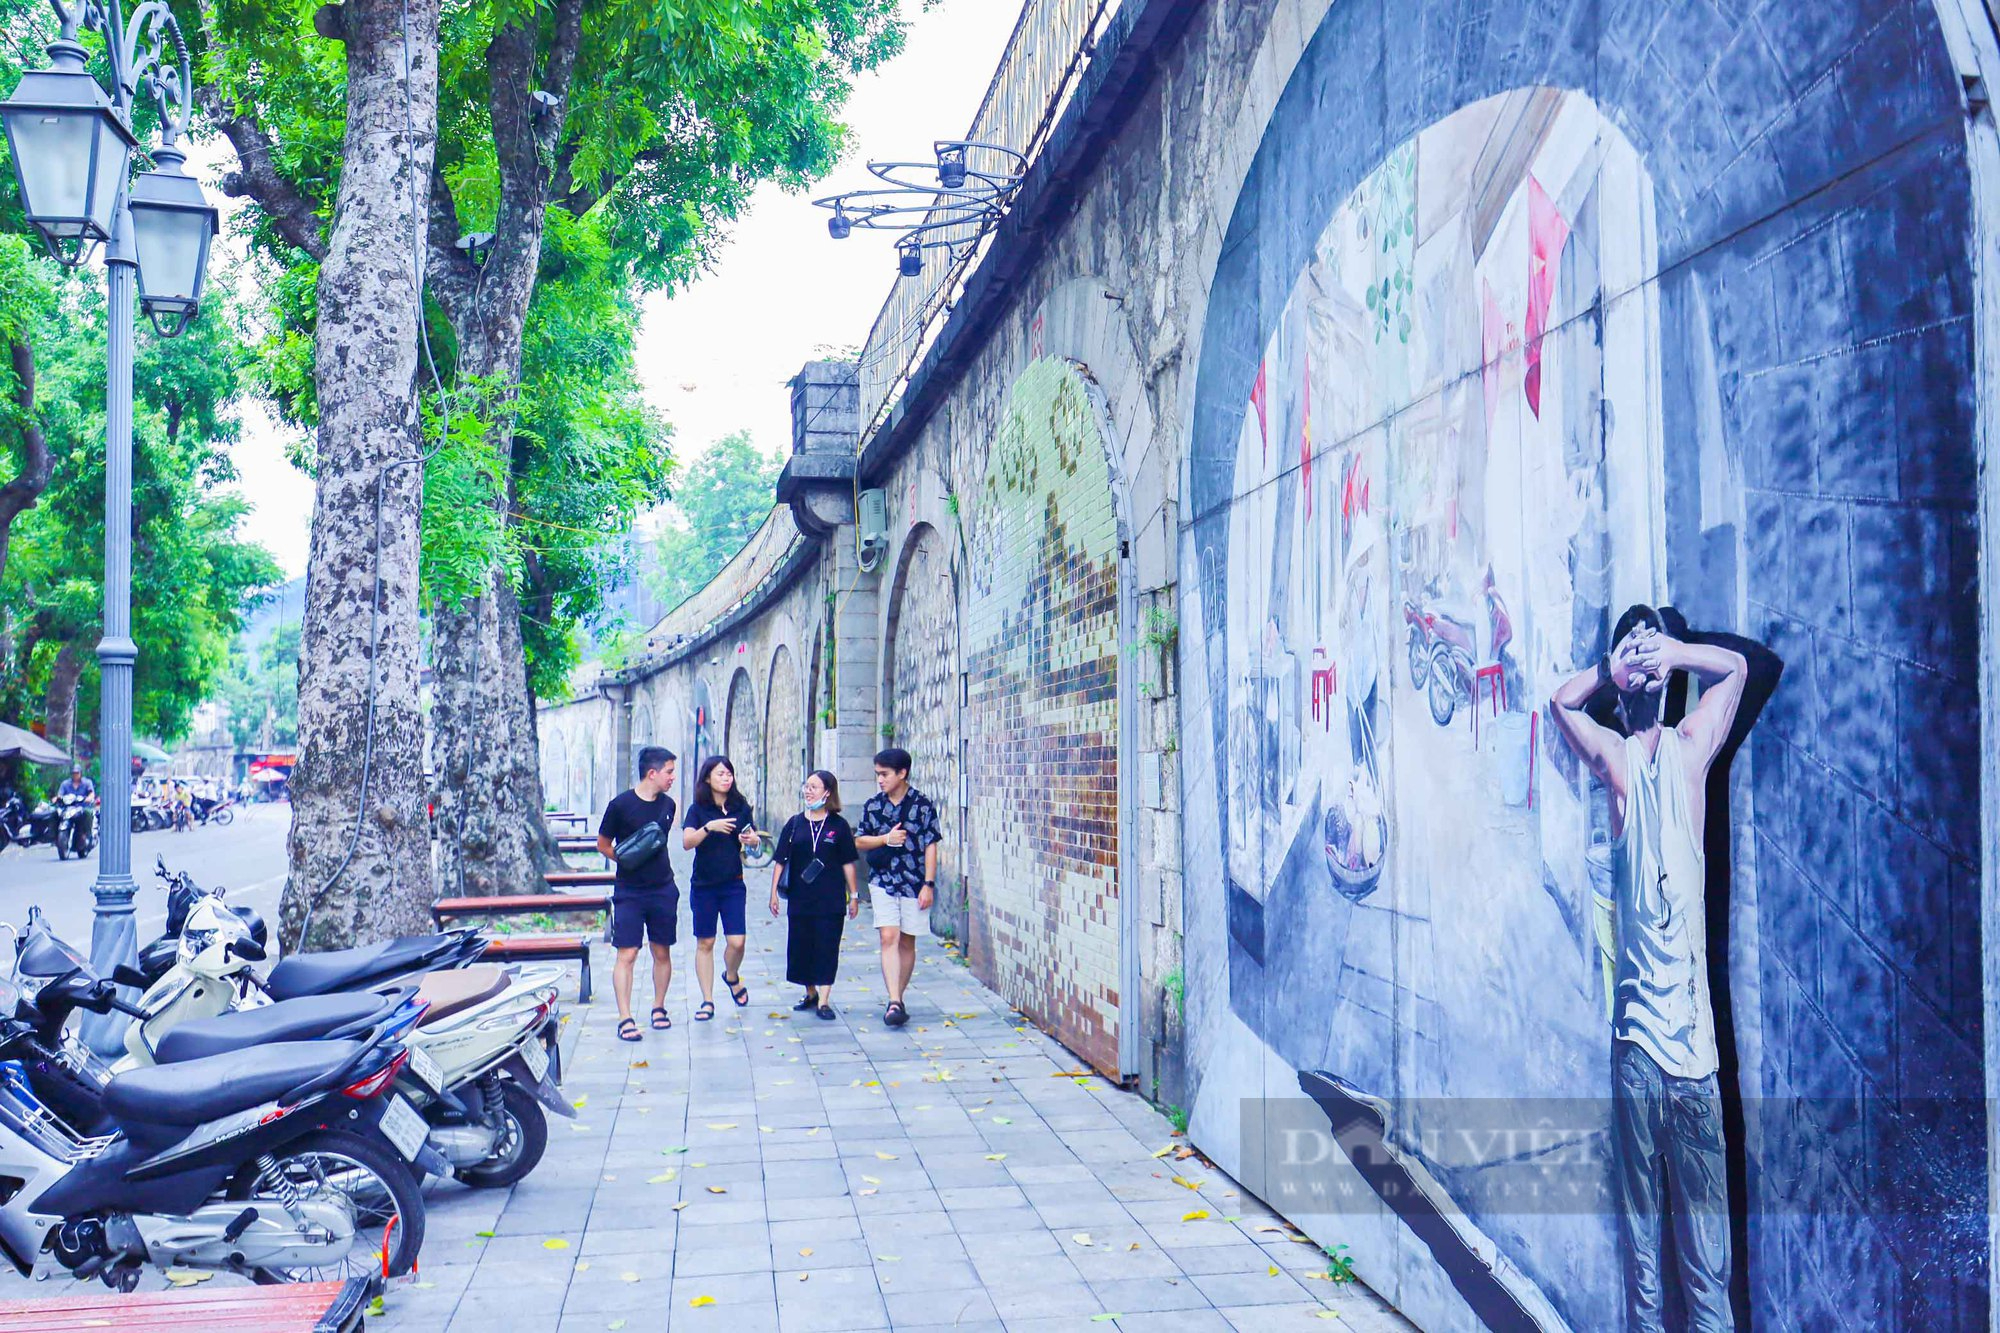 Hàng loạt không gian văn hóa nghệ thuật tại Hà Nội bị bôi bẩn, xuống cấp khiến nhiều người xót xa - Ảnh 16.